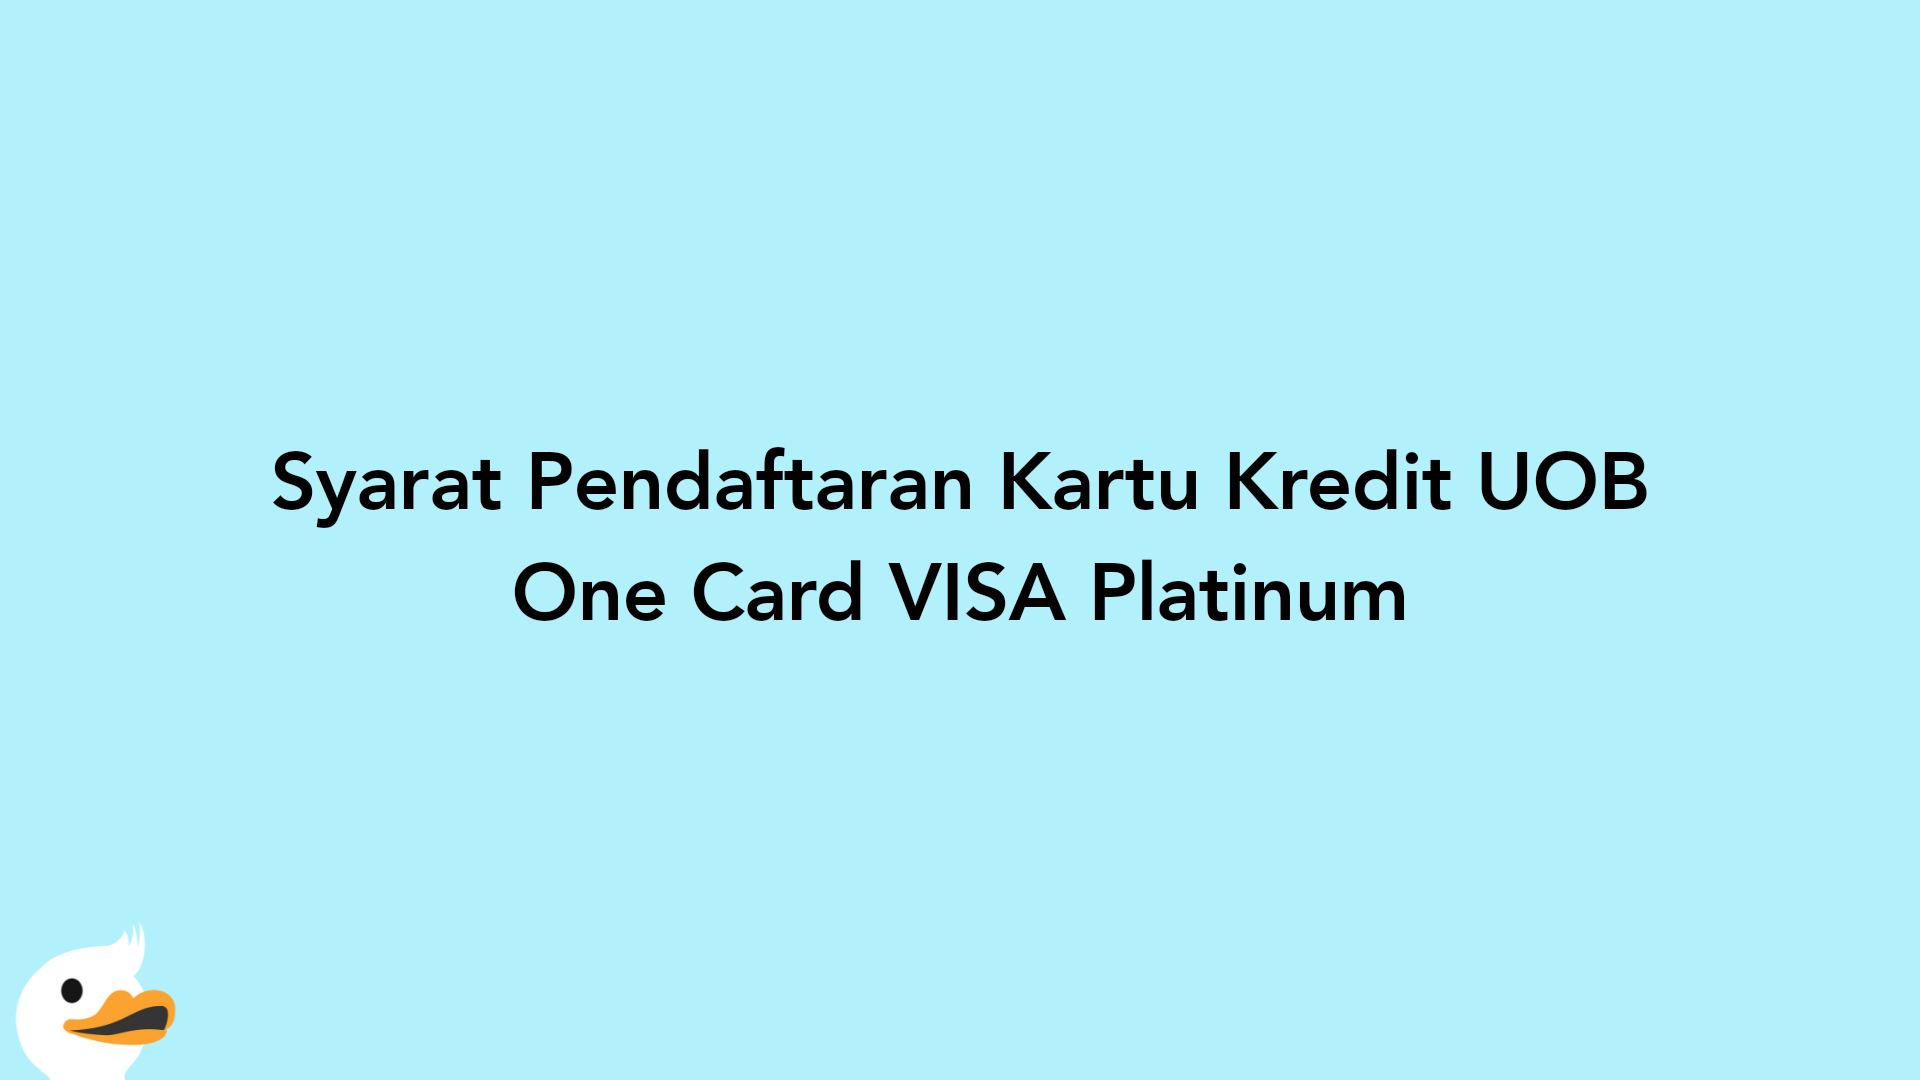 Syarat Pendaftaran Kartu Kredit UOB One Card VISA Platinum